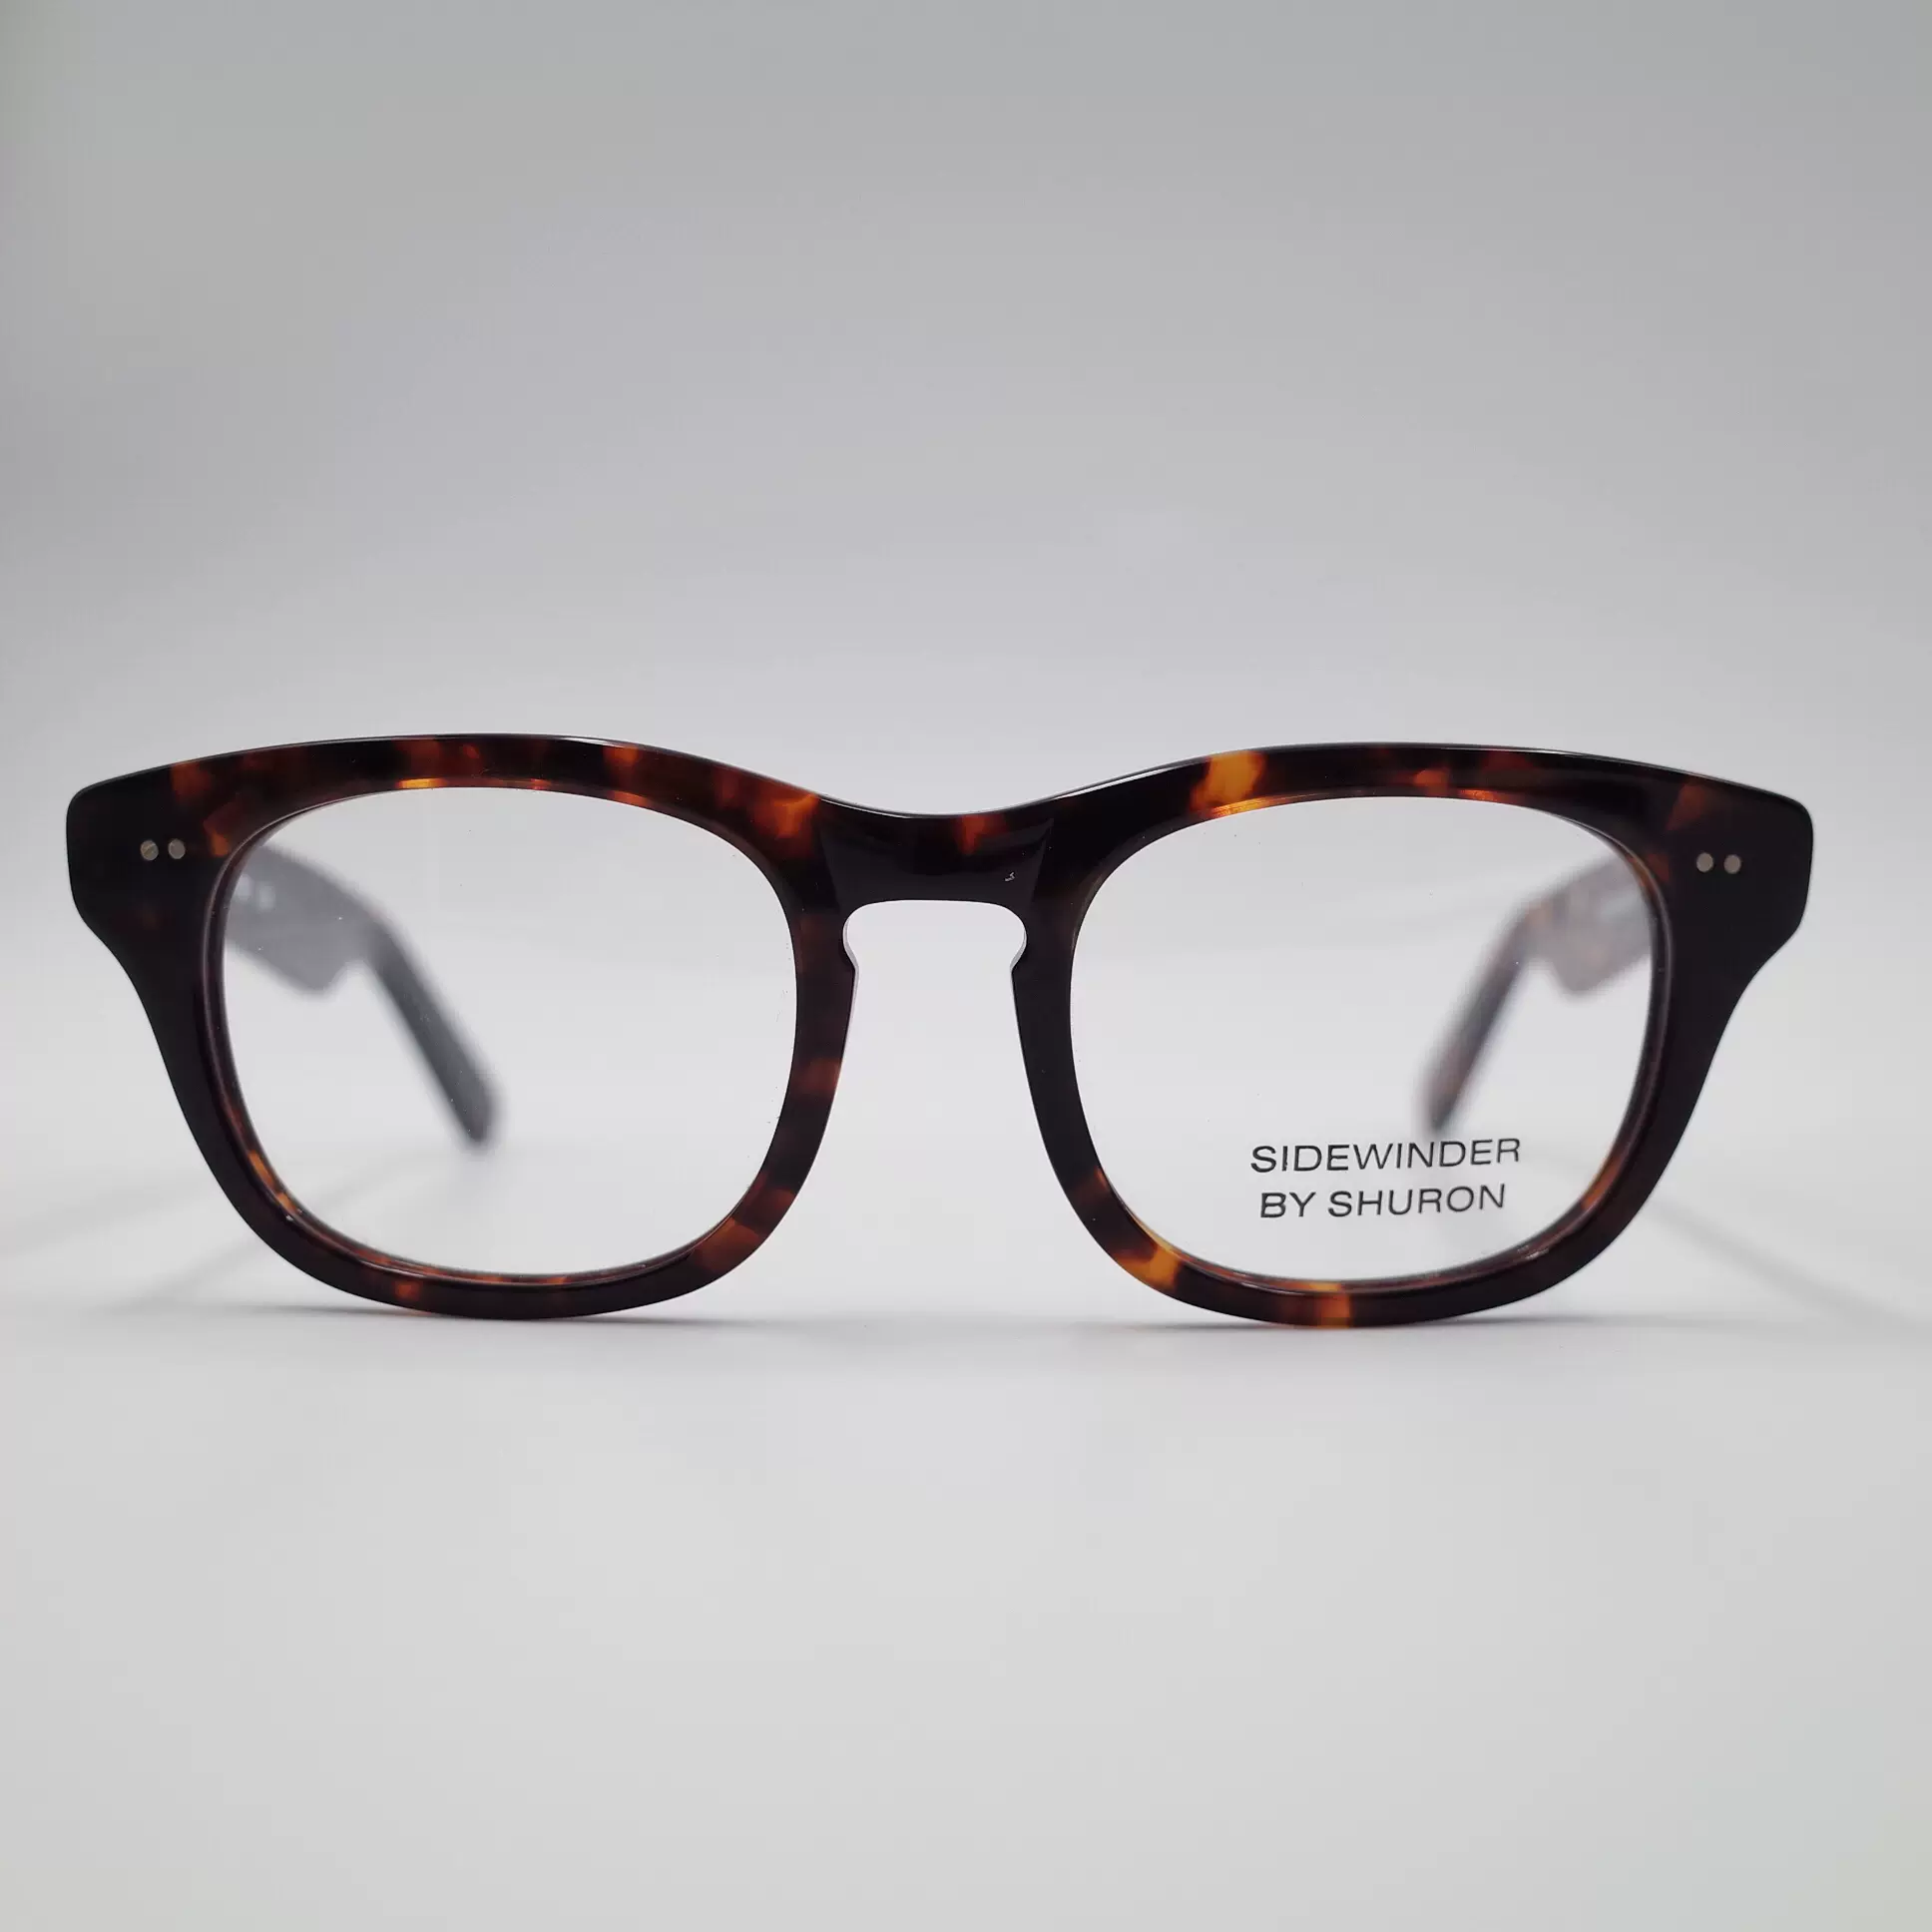 现货美国老牌眼镜SHURON SIDEWINDER进口板材镜架复古玳瑁色全框-Taobao